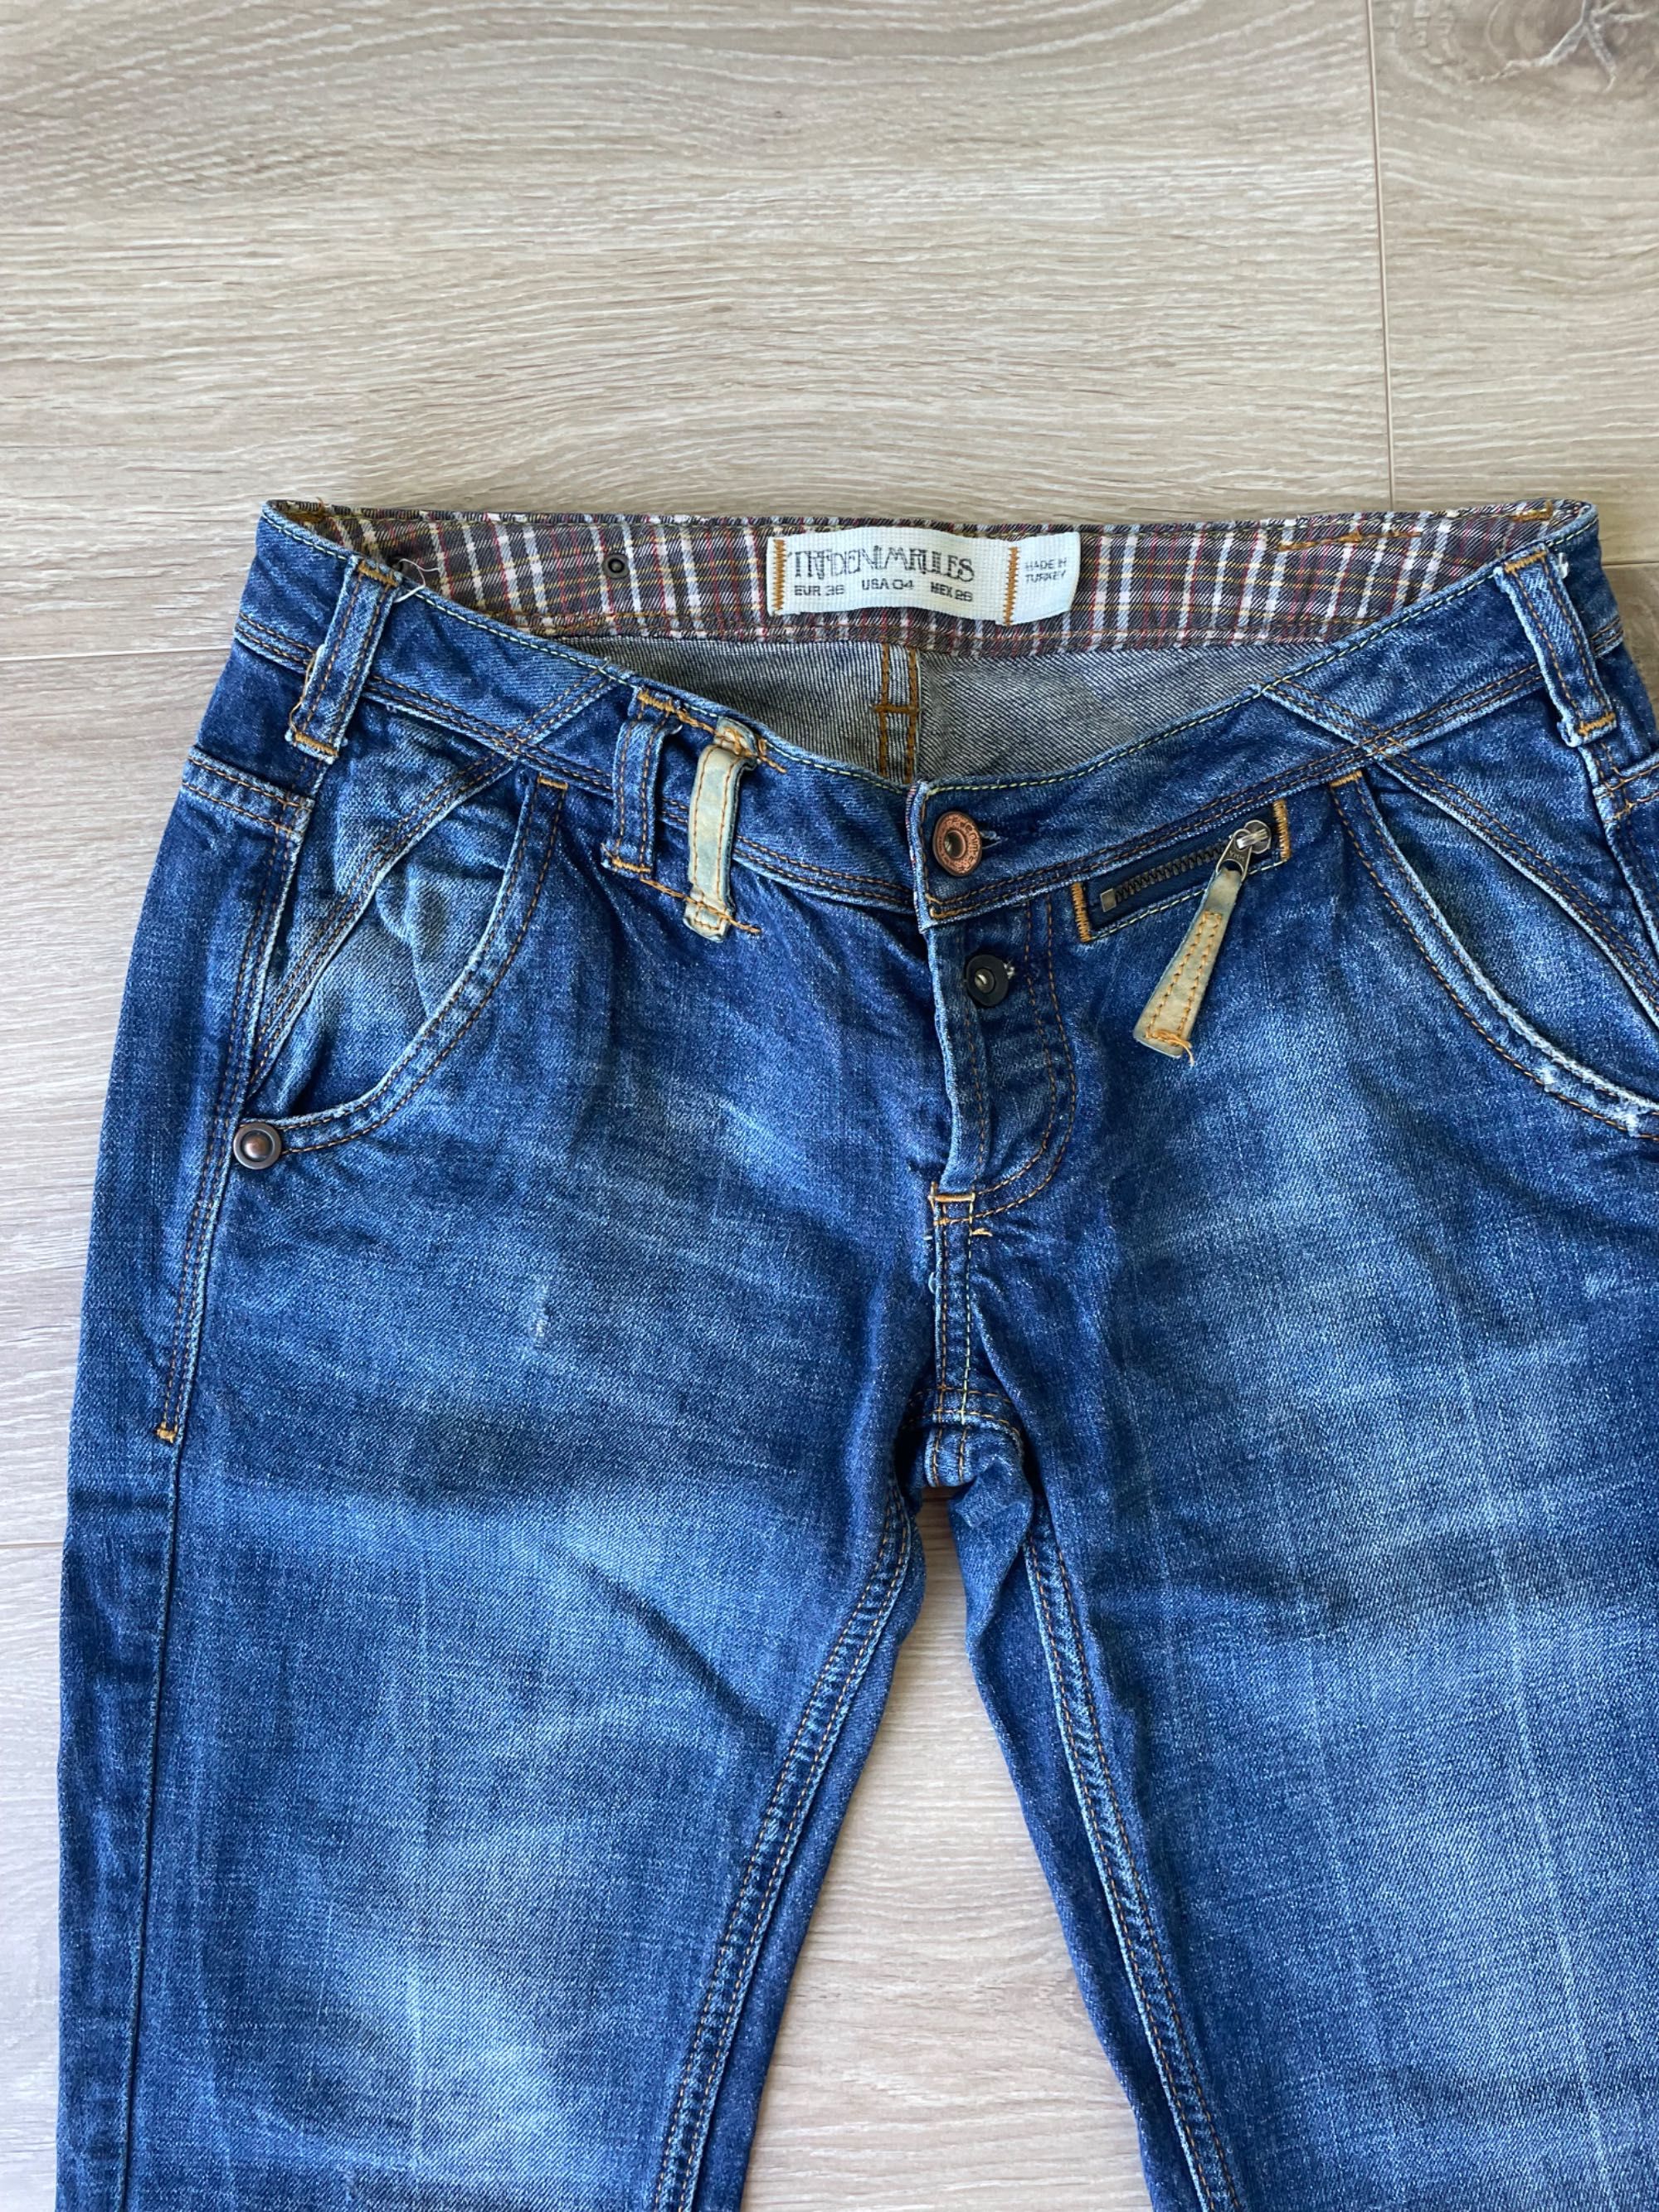 Spodnie jeansowe zara trf